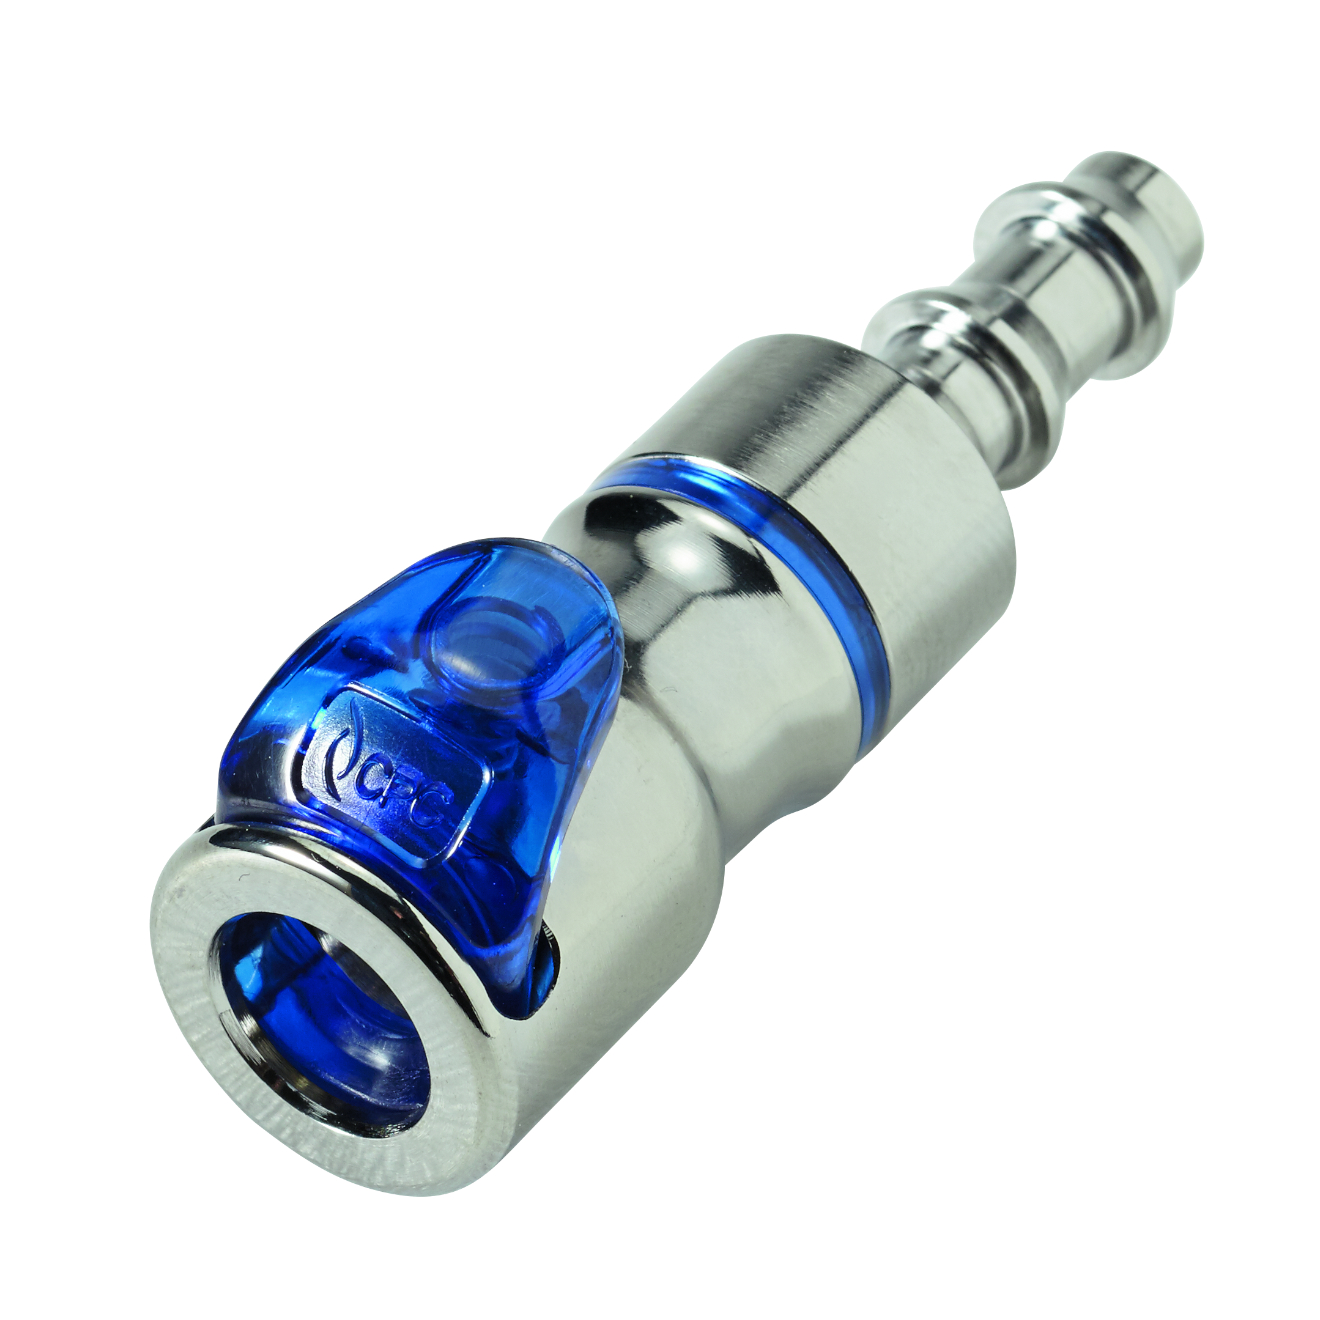 CPC Schnellverschlusskupplung mit Absperrung, 1/4" (6,4 mm) ID, Messing verchromt, Blau